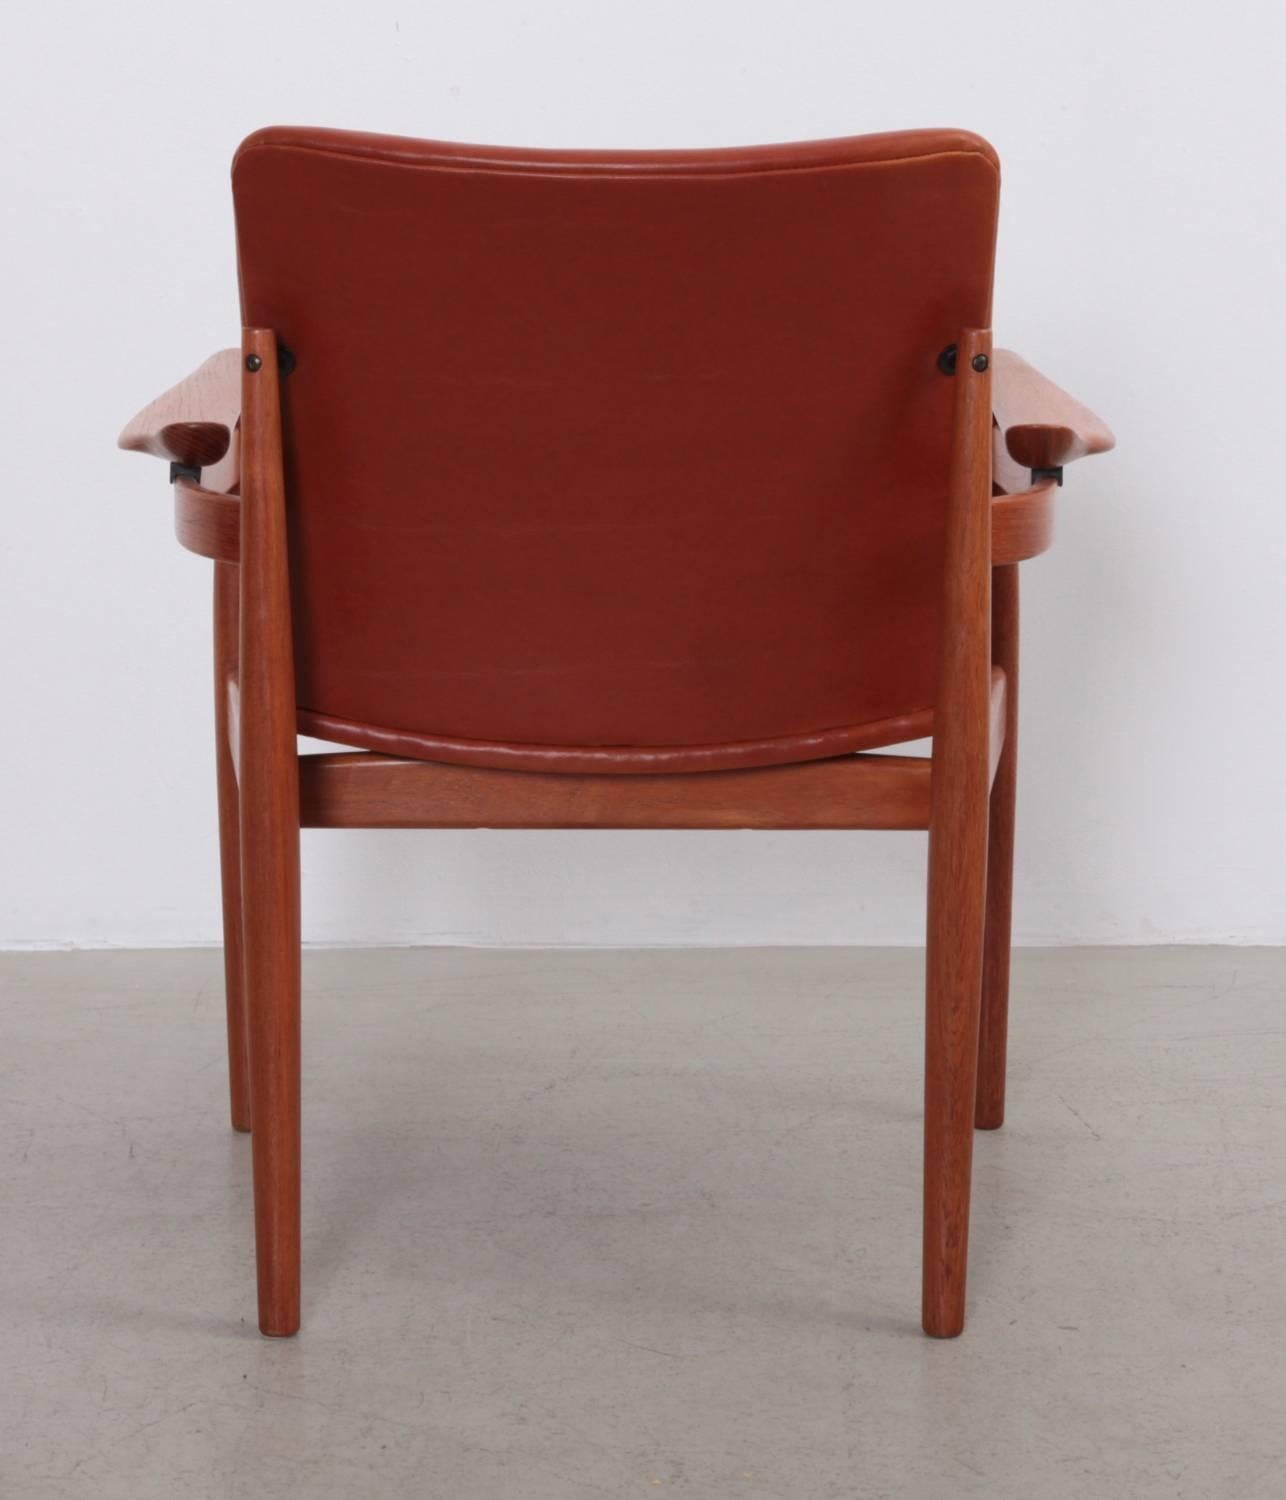 Danish Arm or Desk Chair 192 by Finn Juhl for France & Son, Denmark, 1963